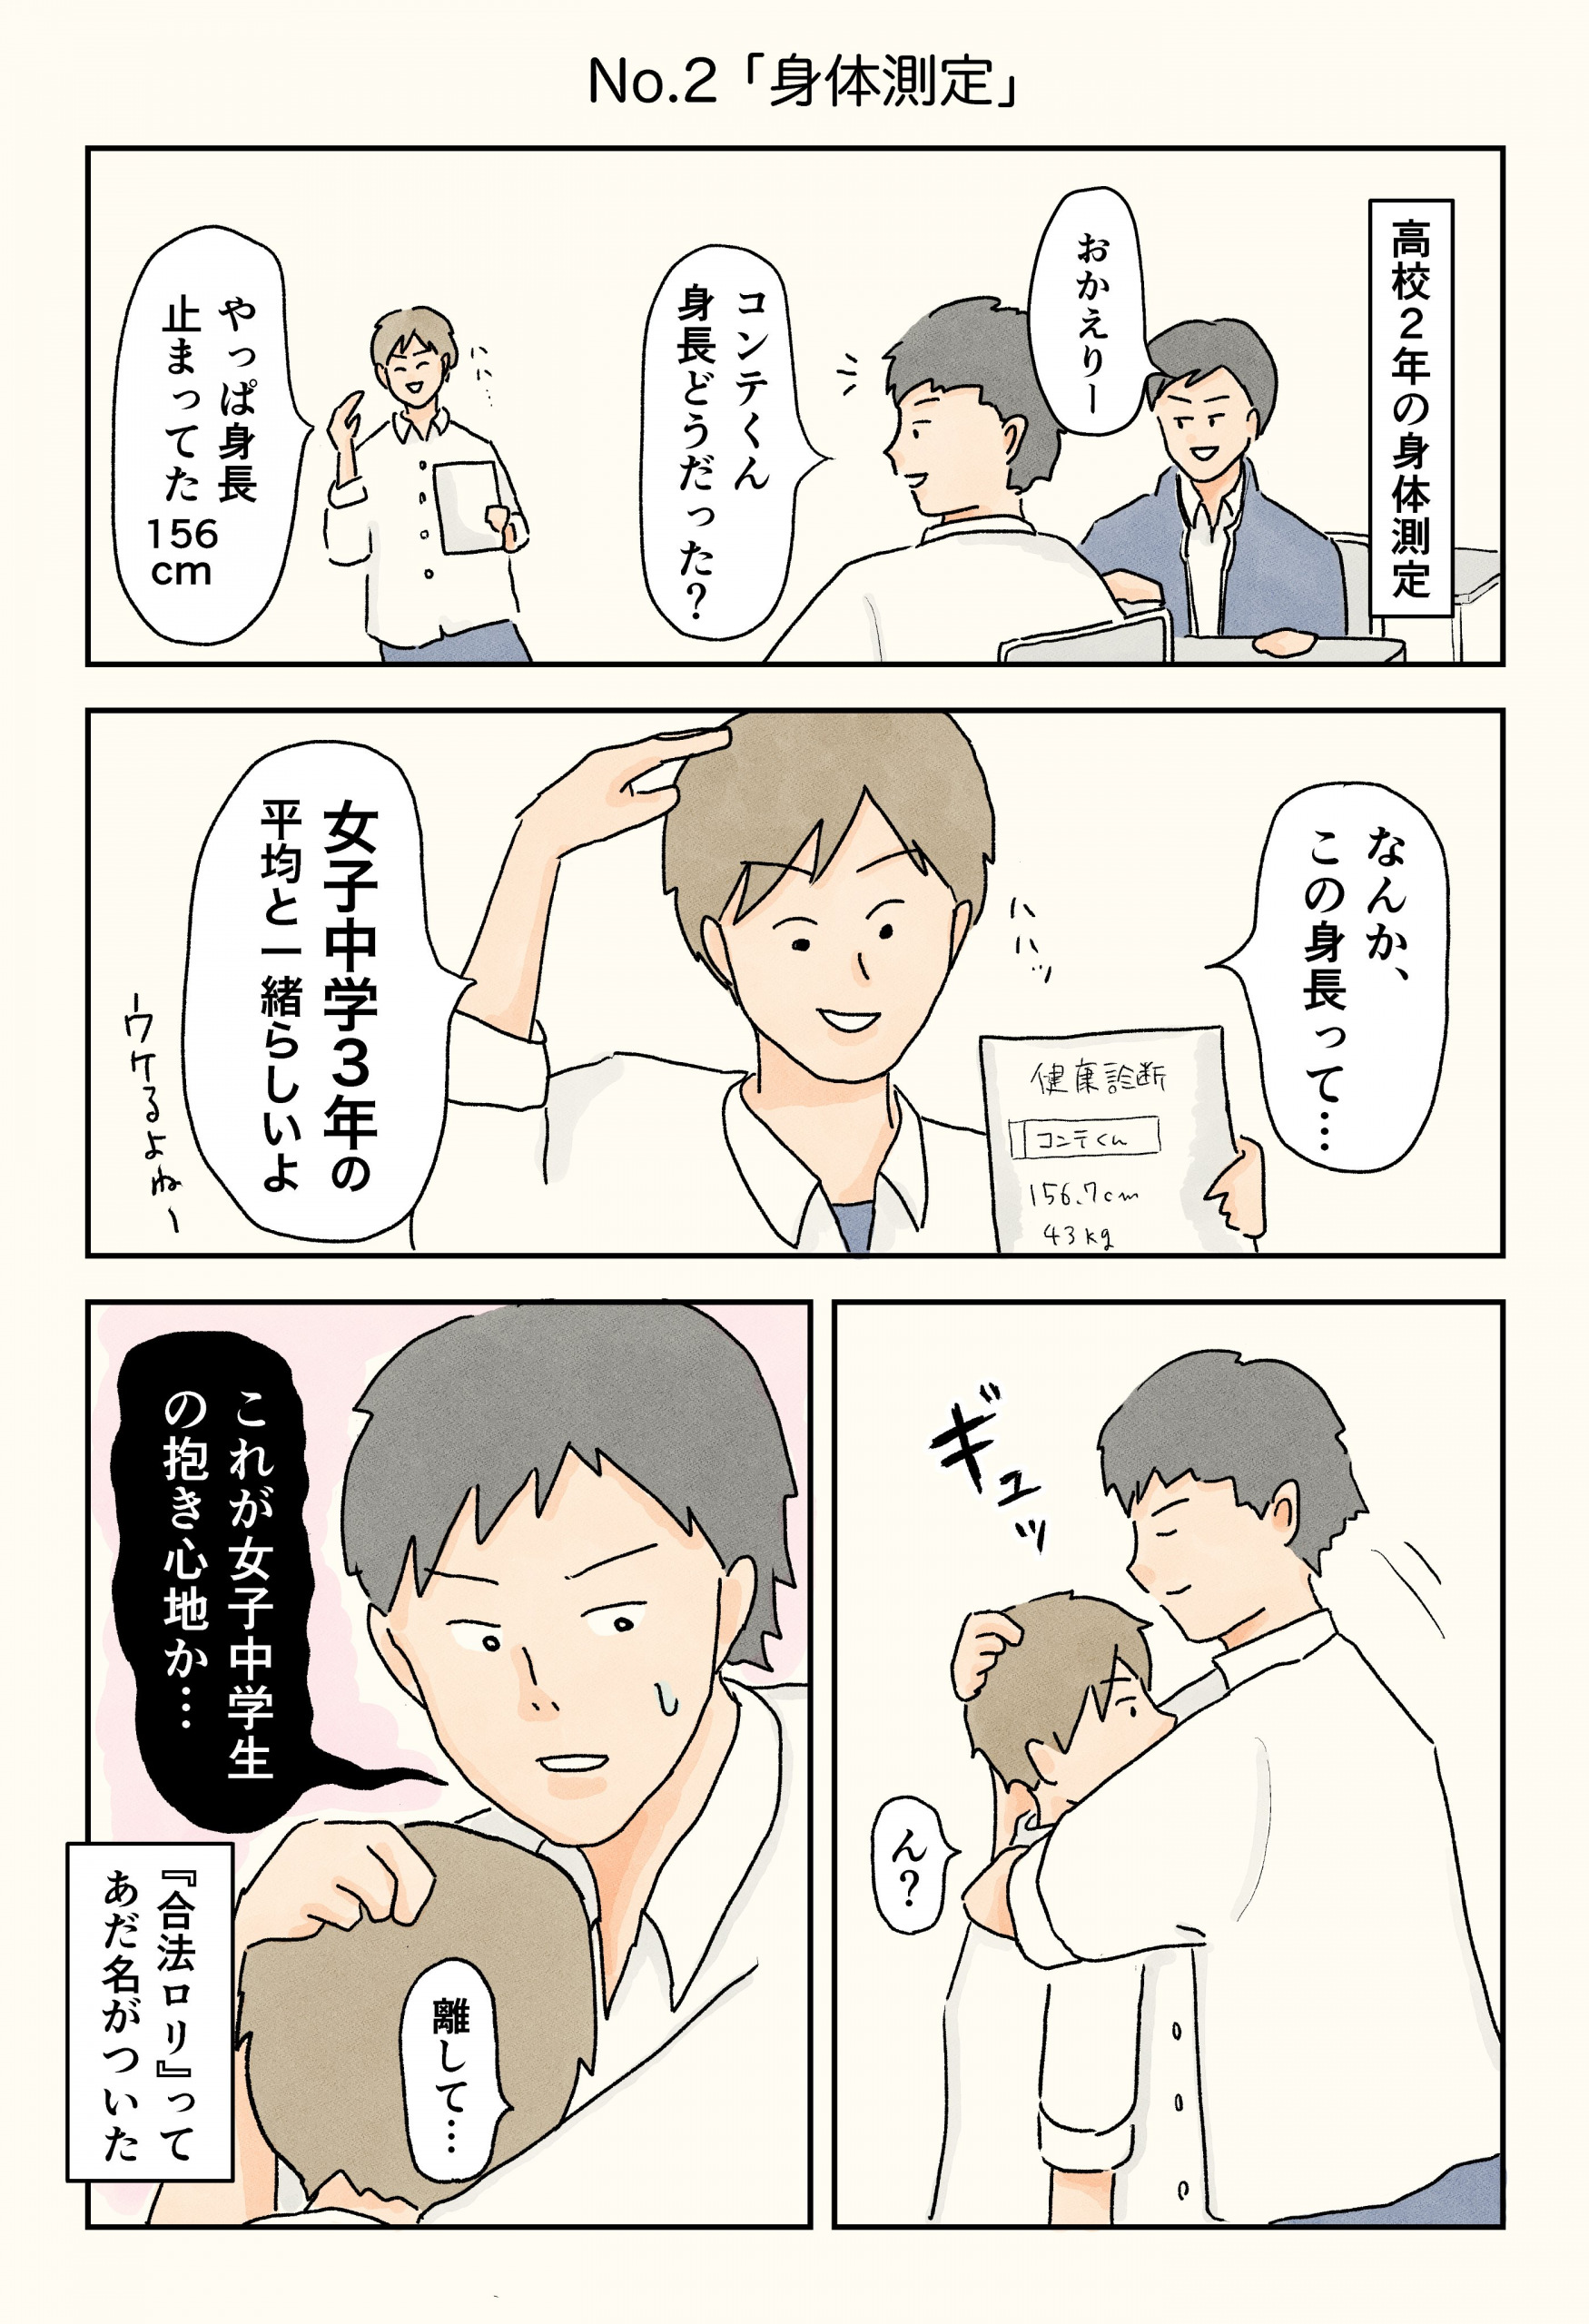 コンテくんさんの漫画「#男子校エッセイ 」1